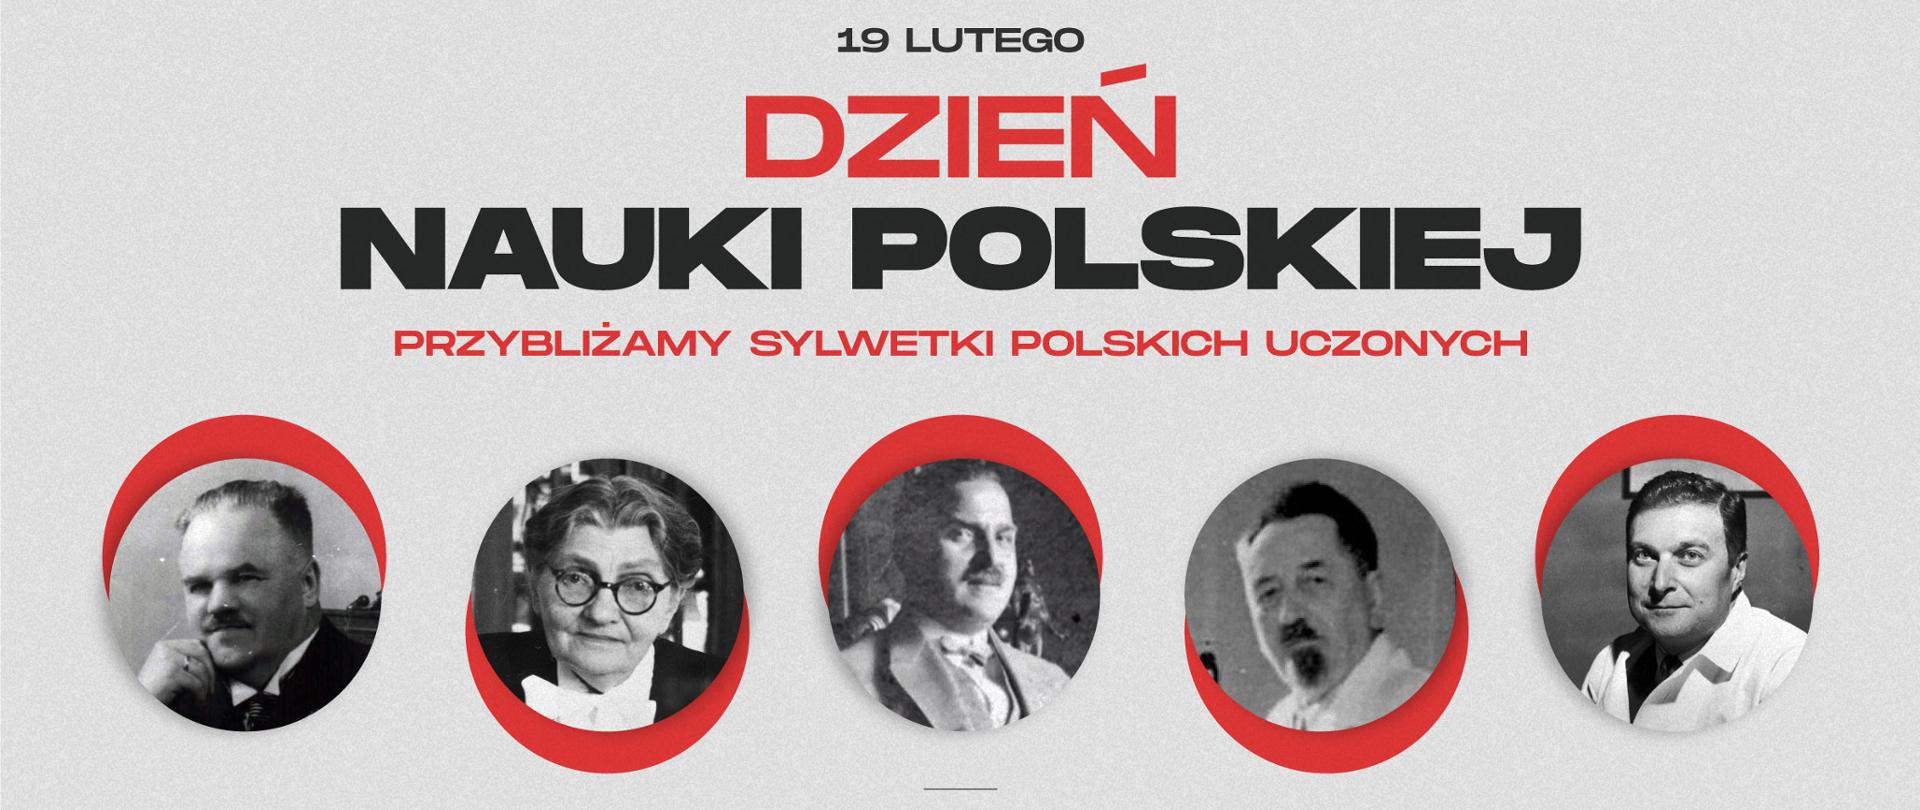 plansza przedstawia napis dzień nauki polskiej przybliżamy sylwetki polskich uczonych. na dole pod napisem zdjęcia 5 polskich uczonych